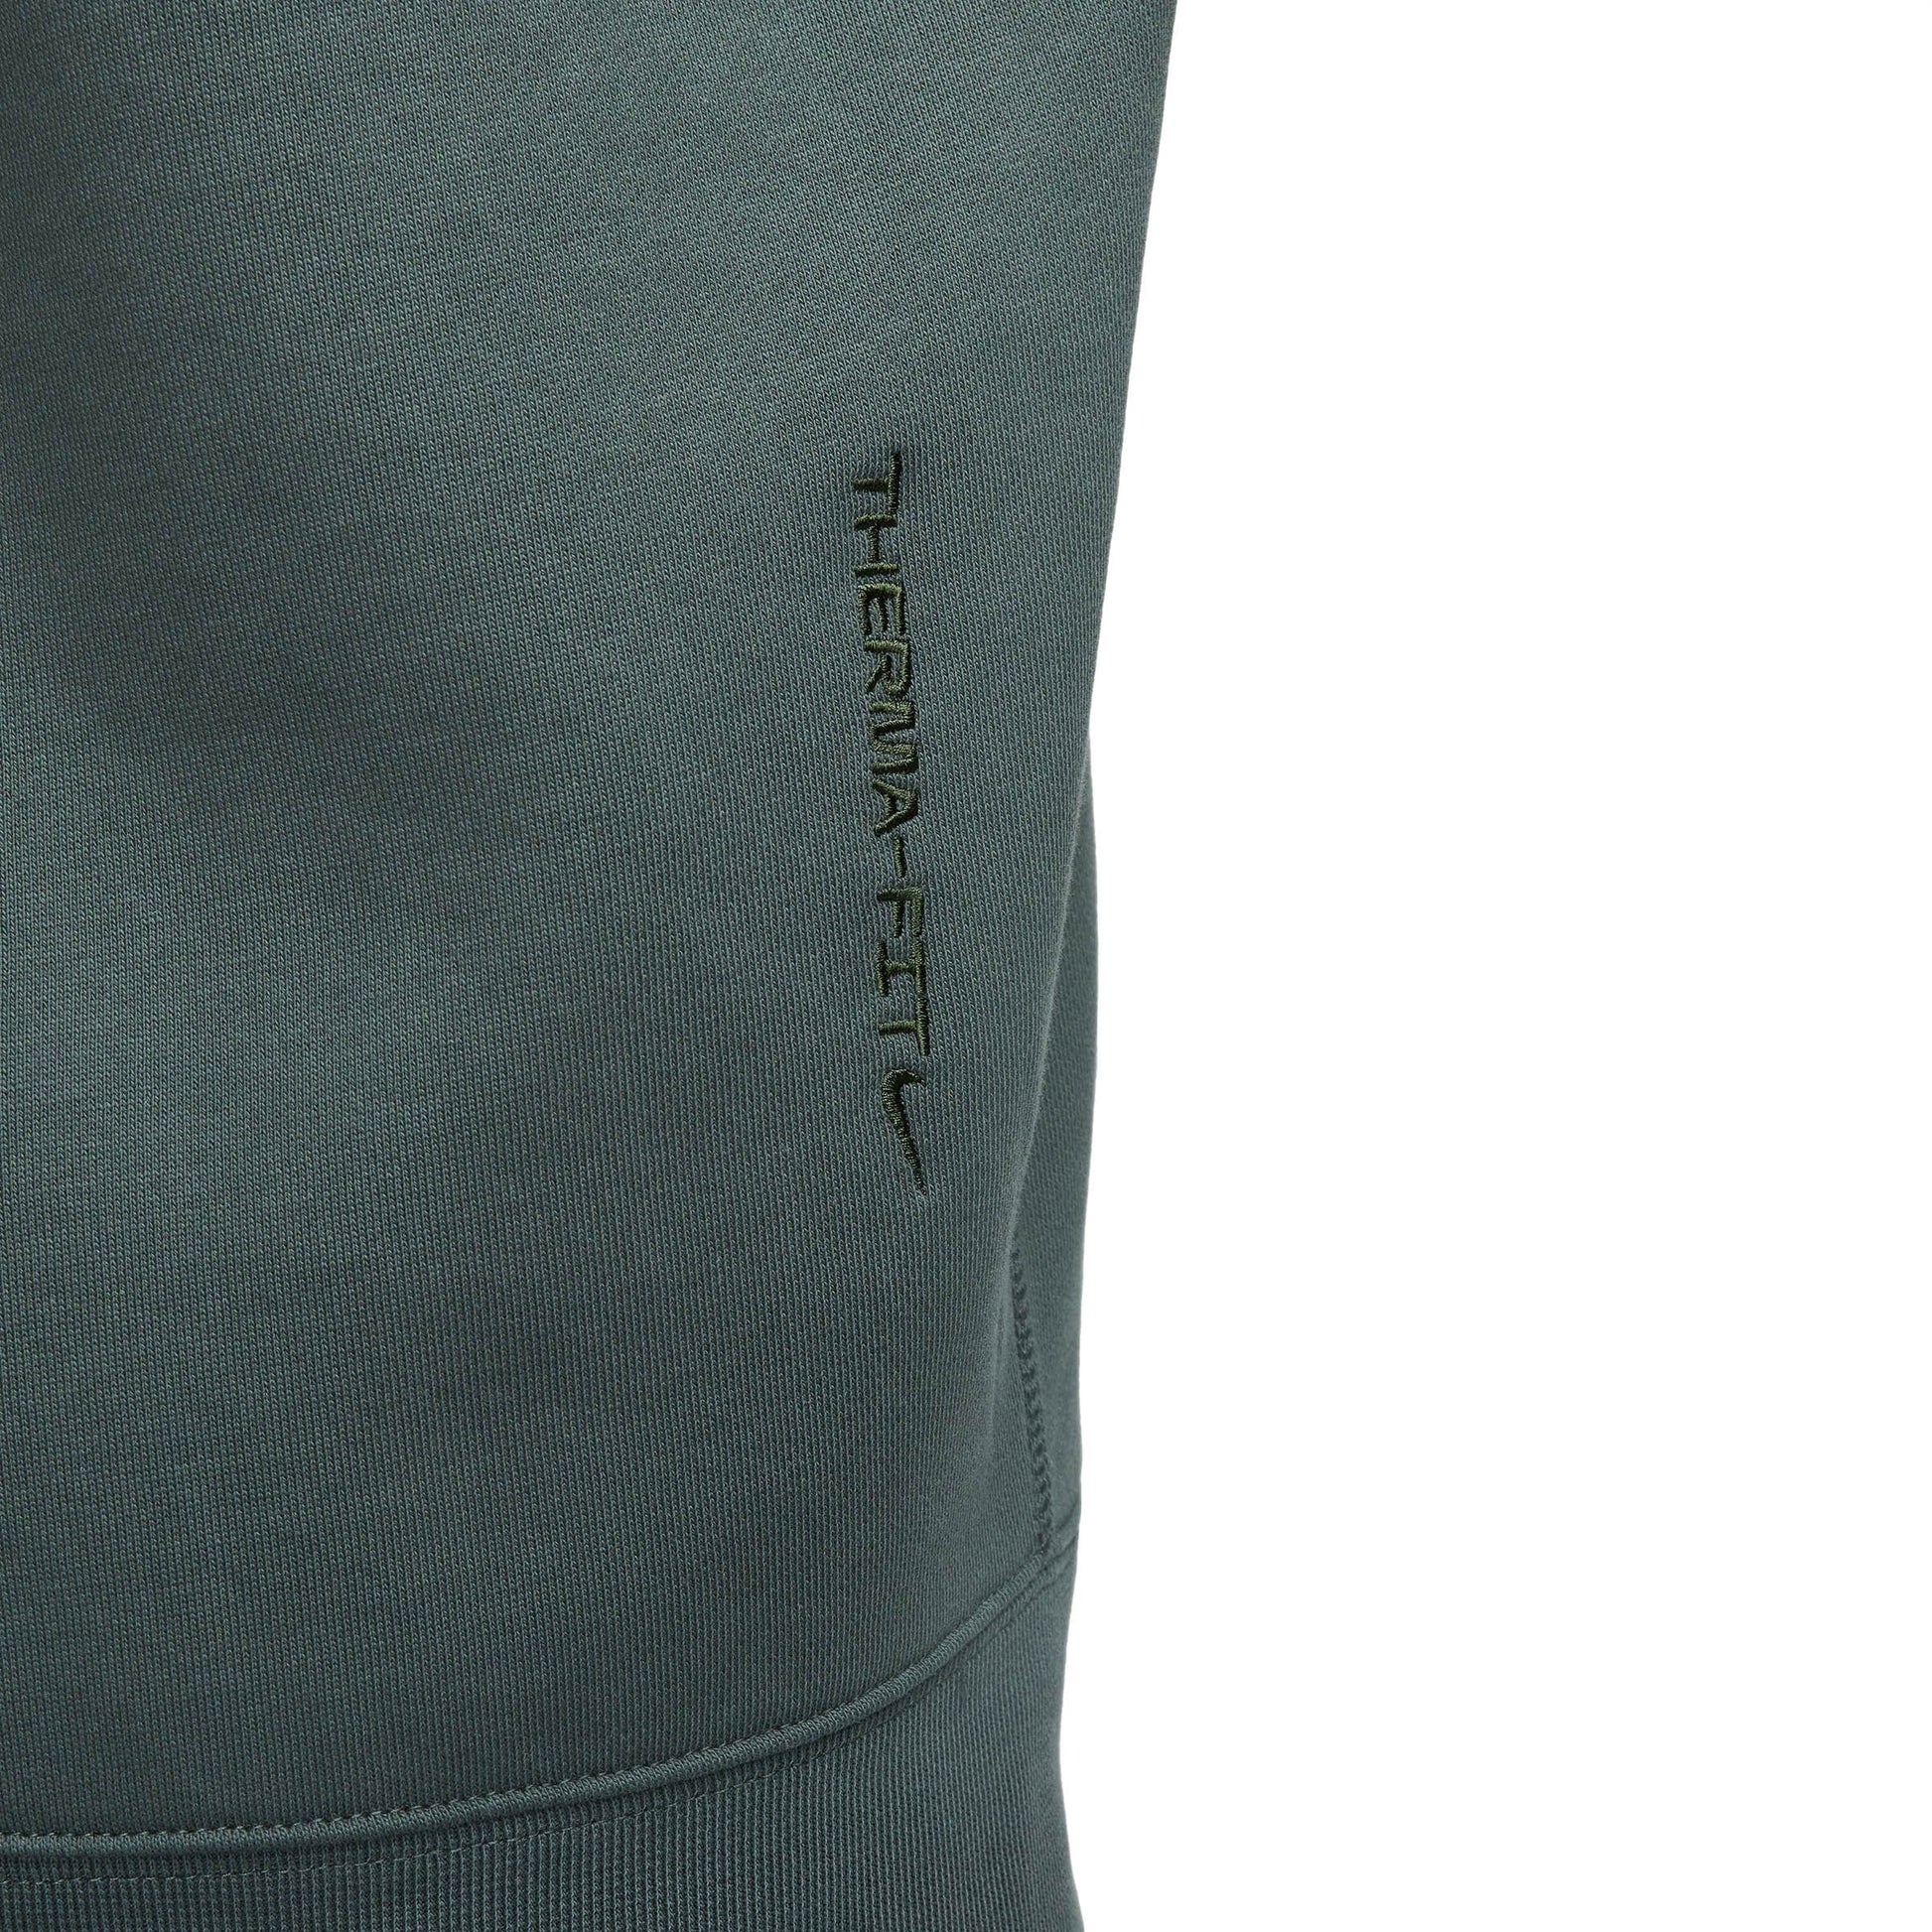 Nike Hoodies & Sweatshirts ACG THERMA-FIT HOOD